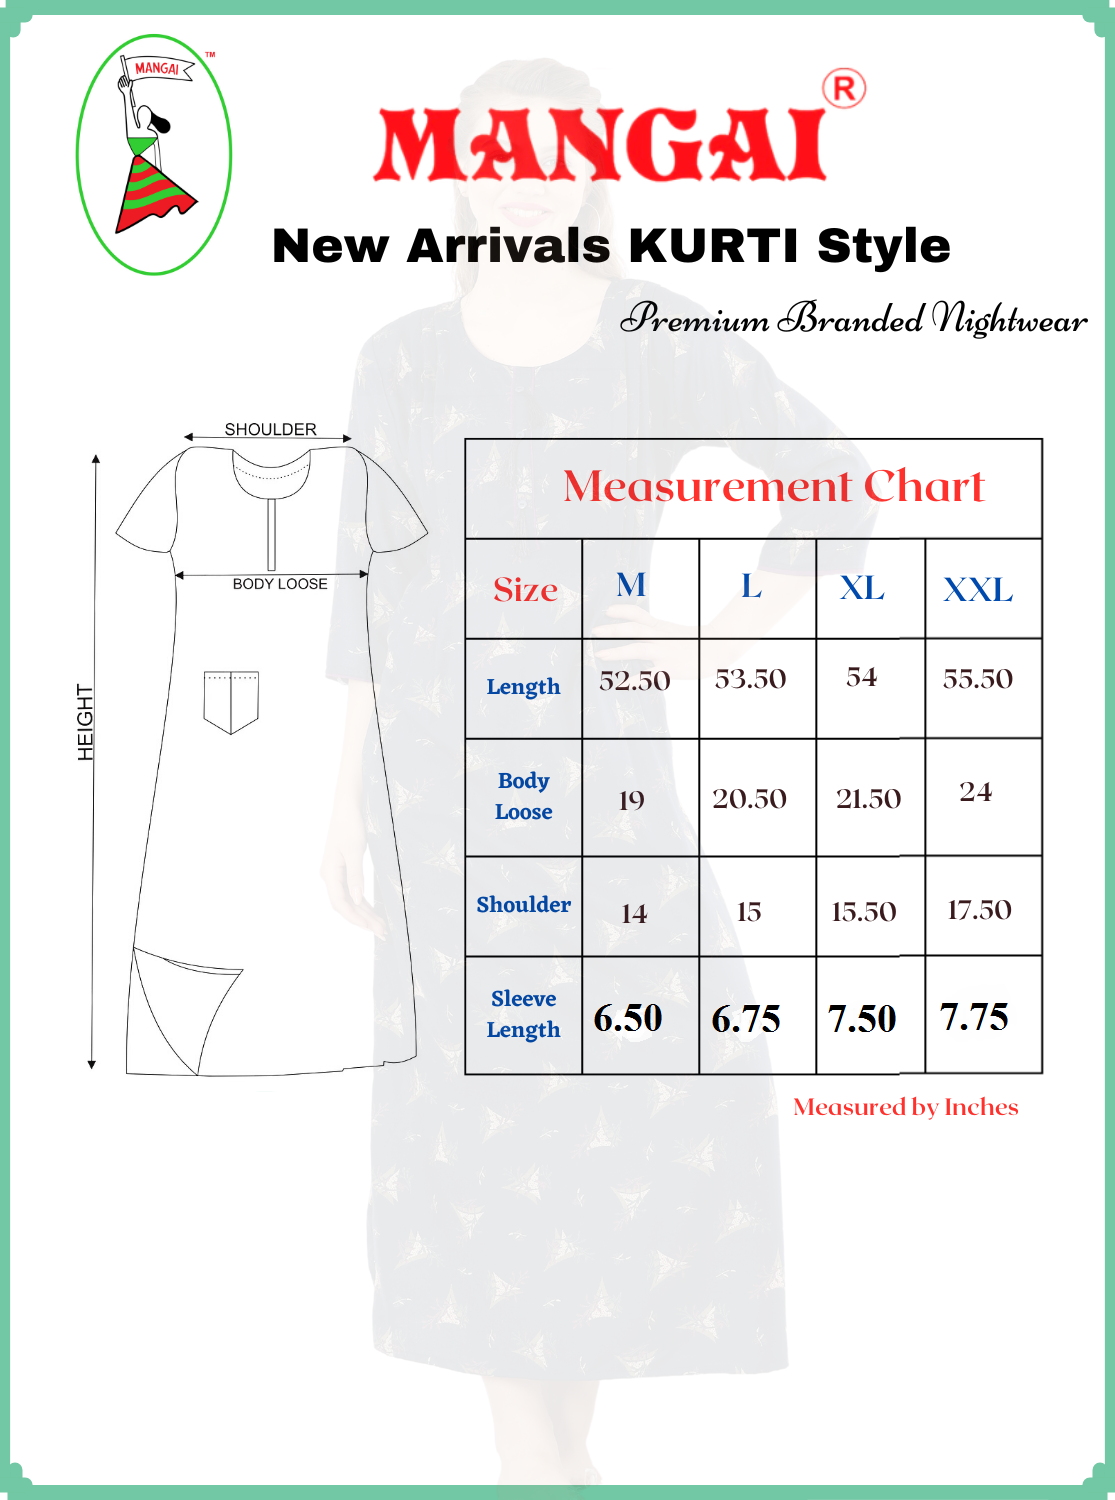 MANGAI New Alpine KURTI Style | Beautiful Stylish KURTI Model | Half Sleeve | Fresh Collection's for Stylish Women's